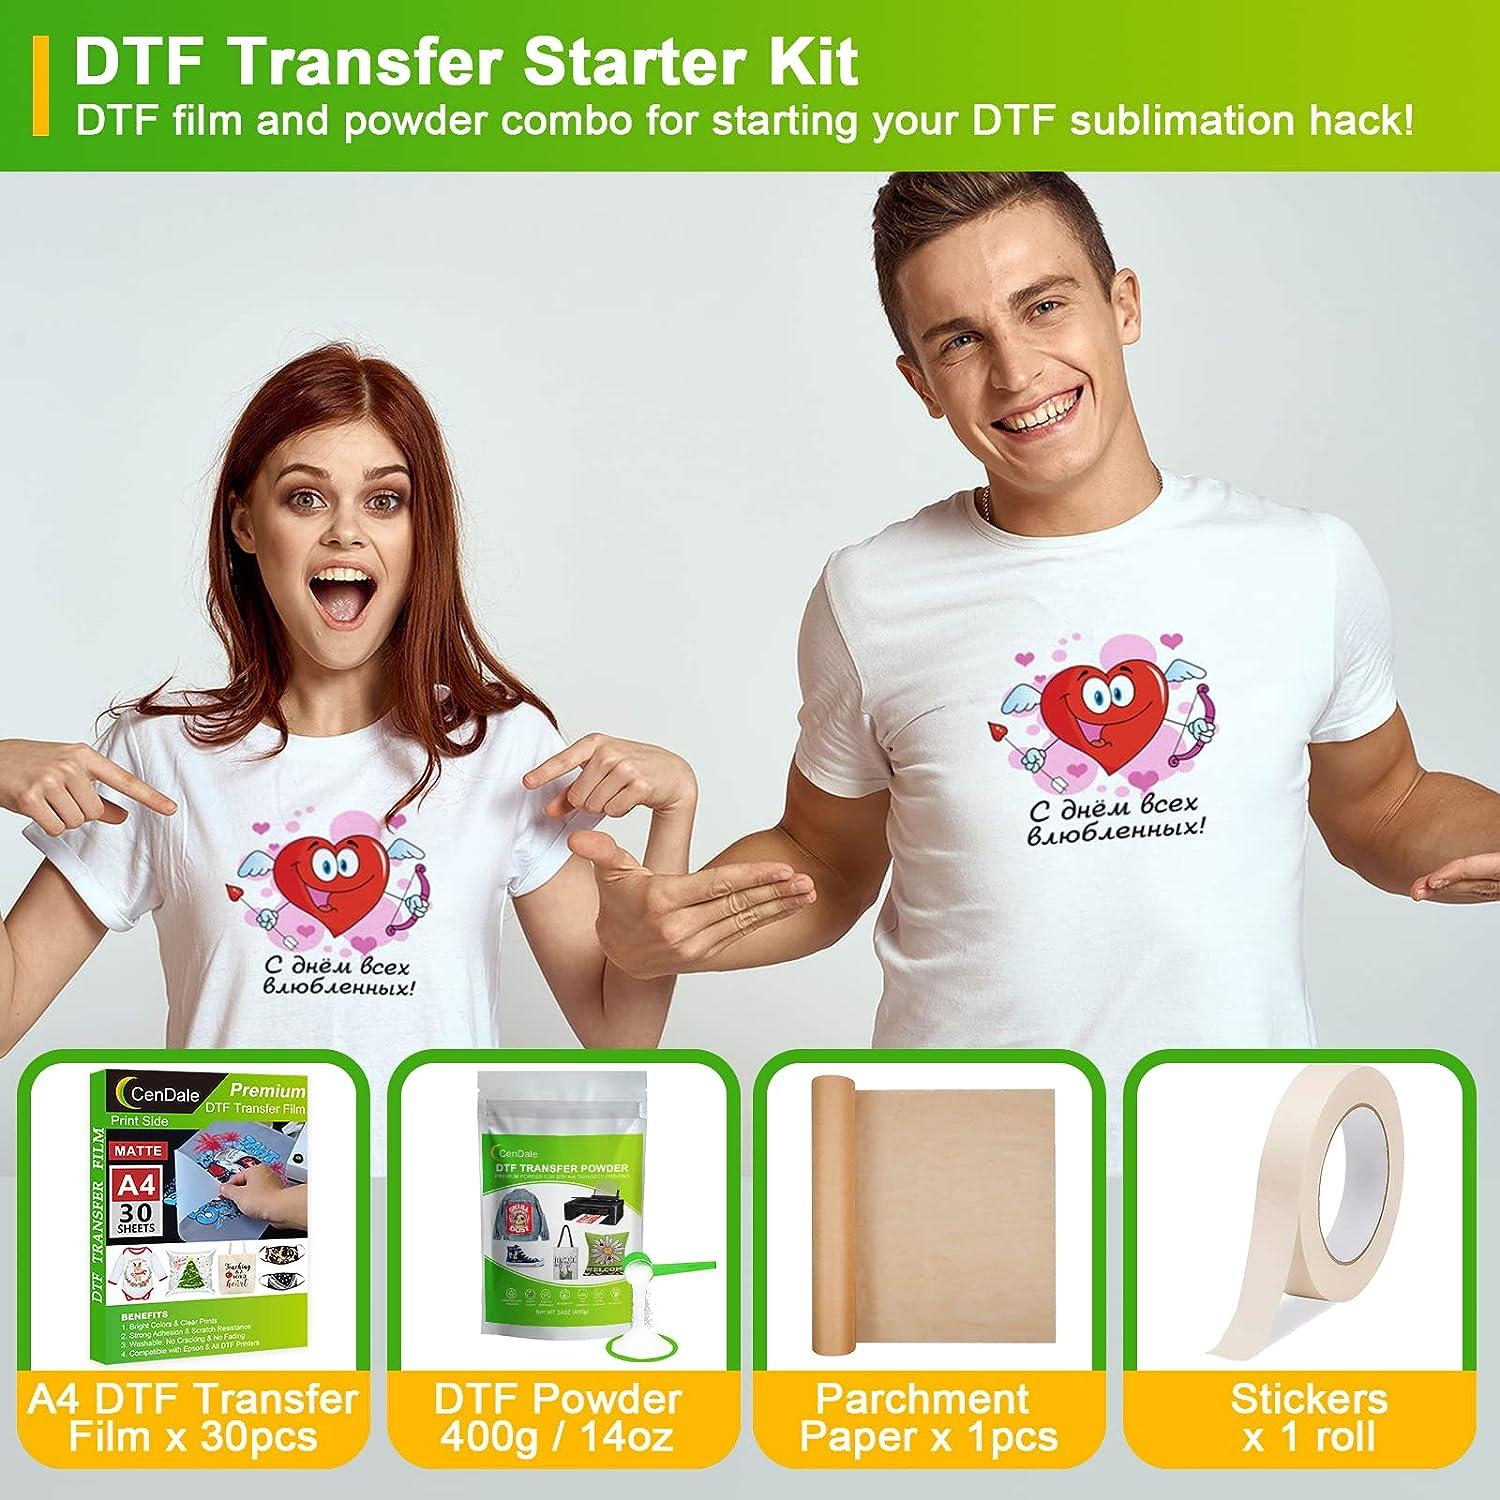 DTF Starter Kit